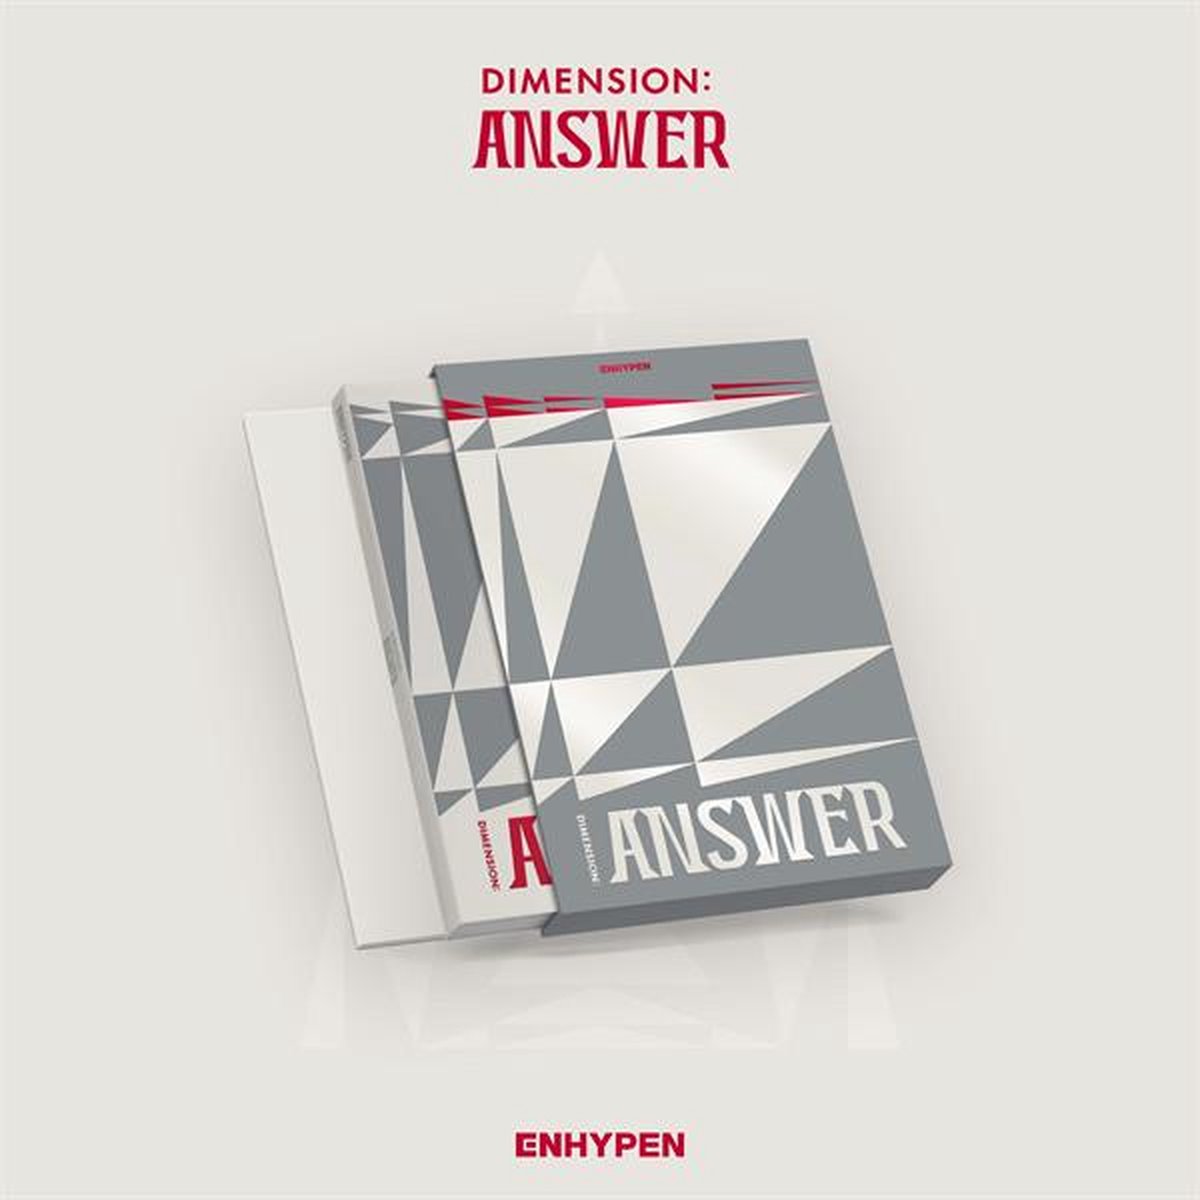 Dimension: Answer, Enhypen, CD (album), Musique